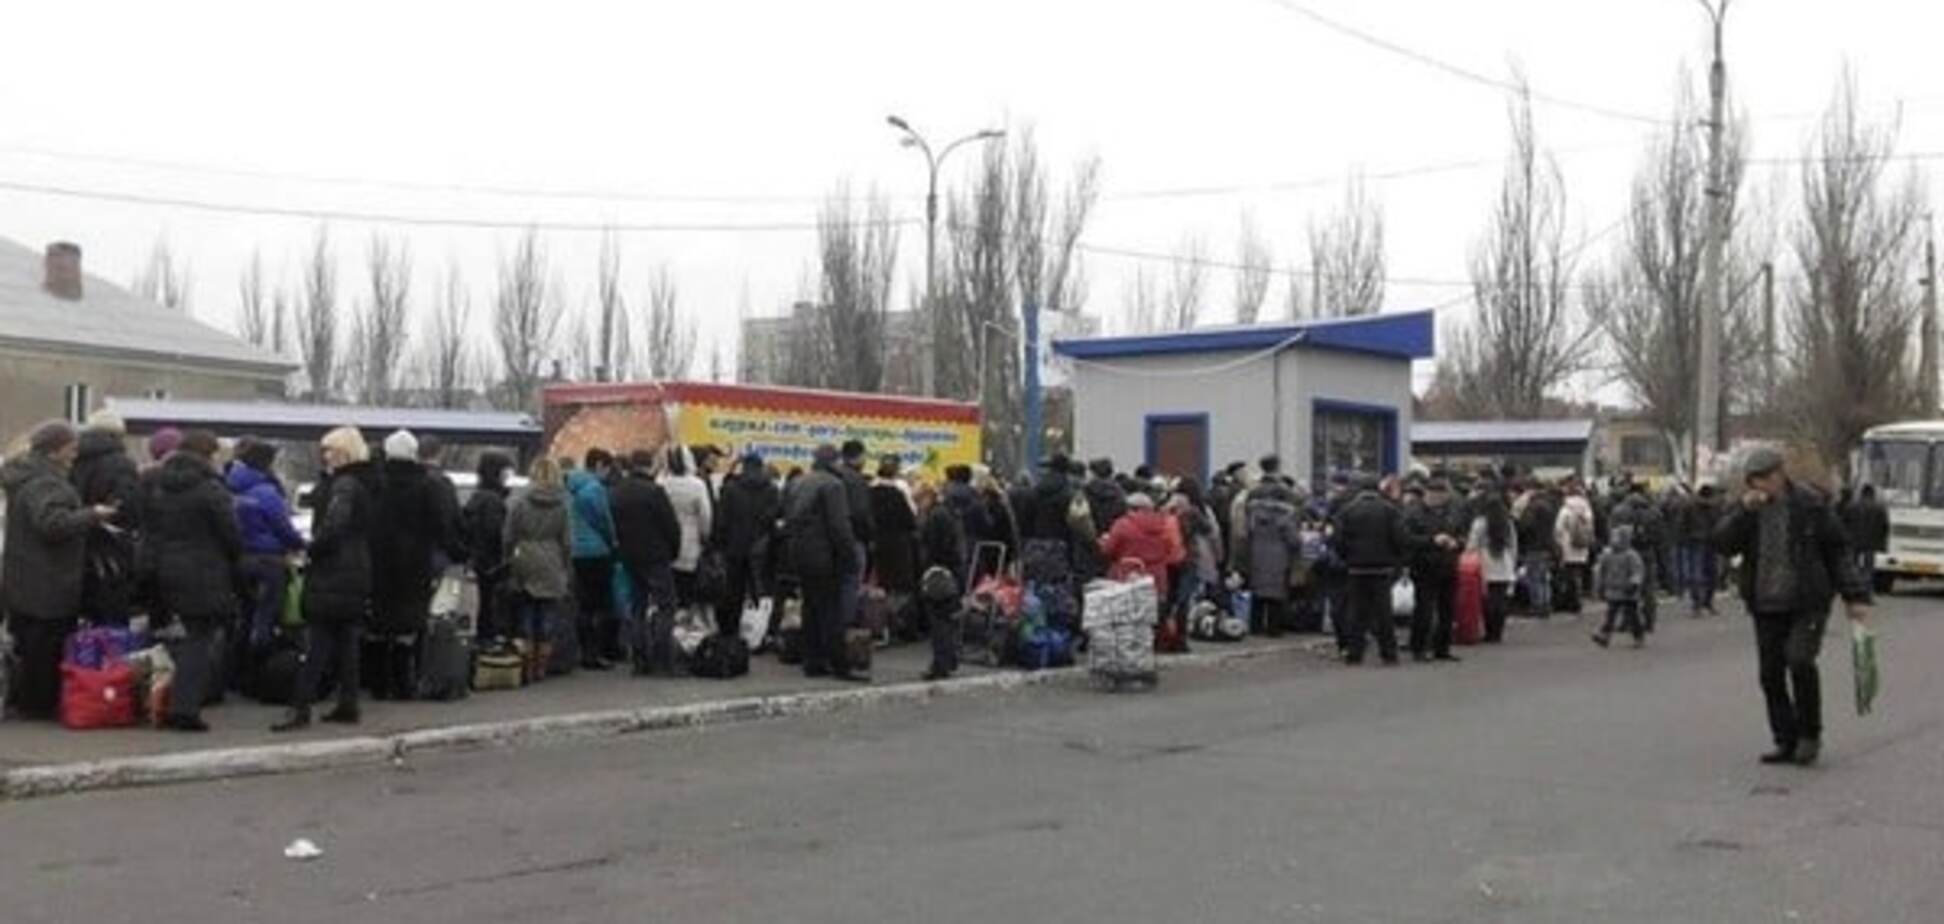 Скрепы не греют: жители Донецка рассказали, как спасаются от морозов